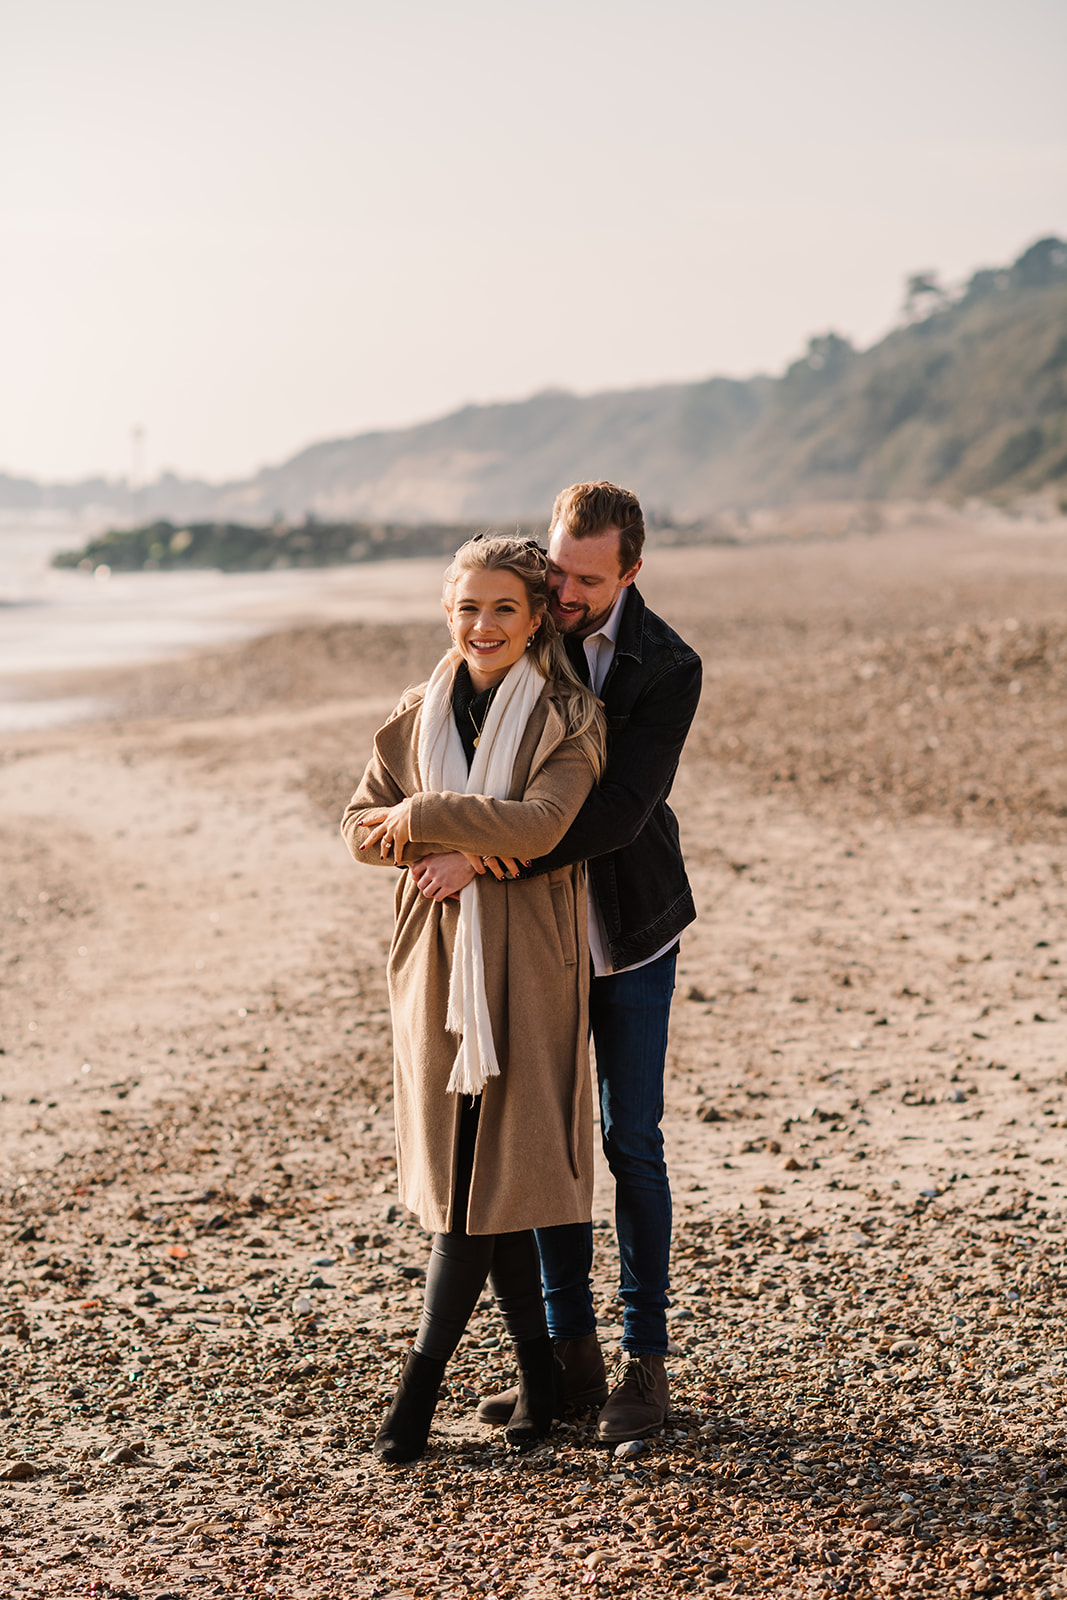 Prewedding shoot at Dorset beach